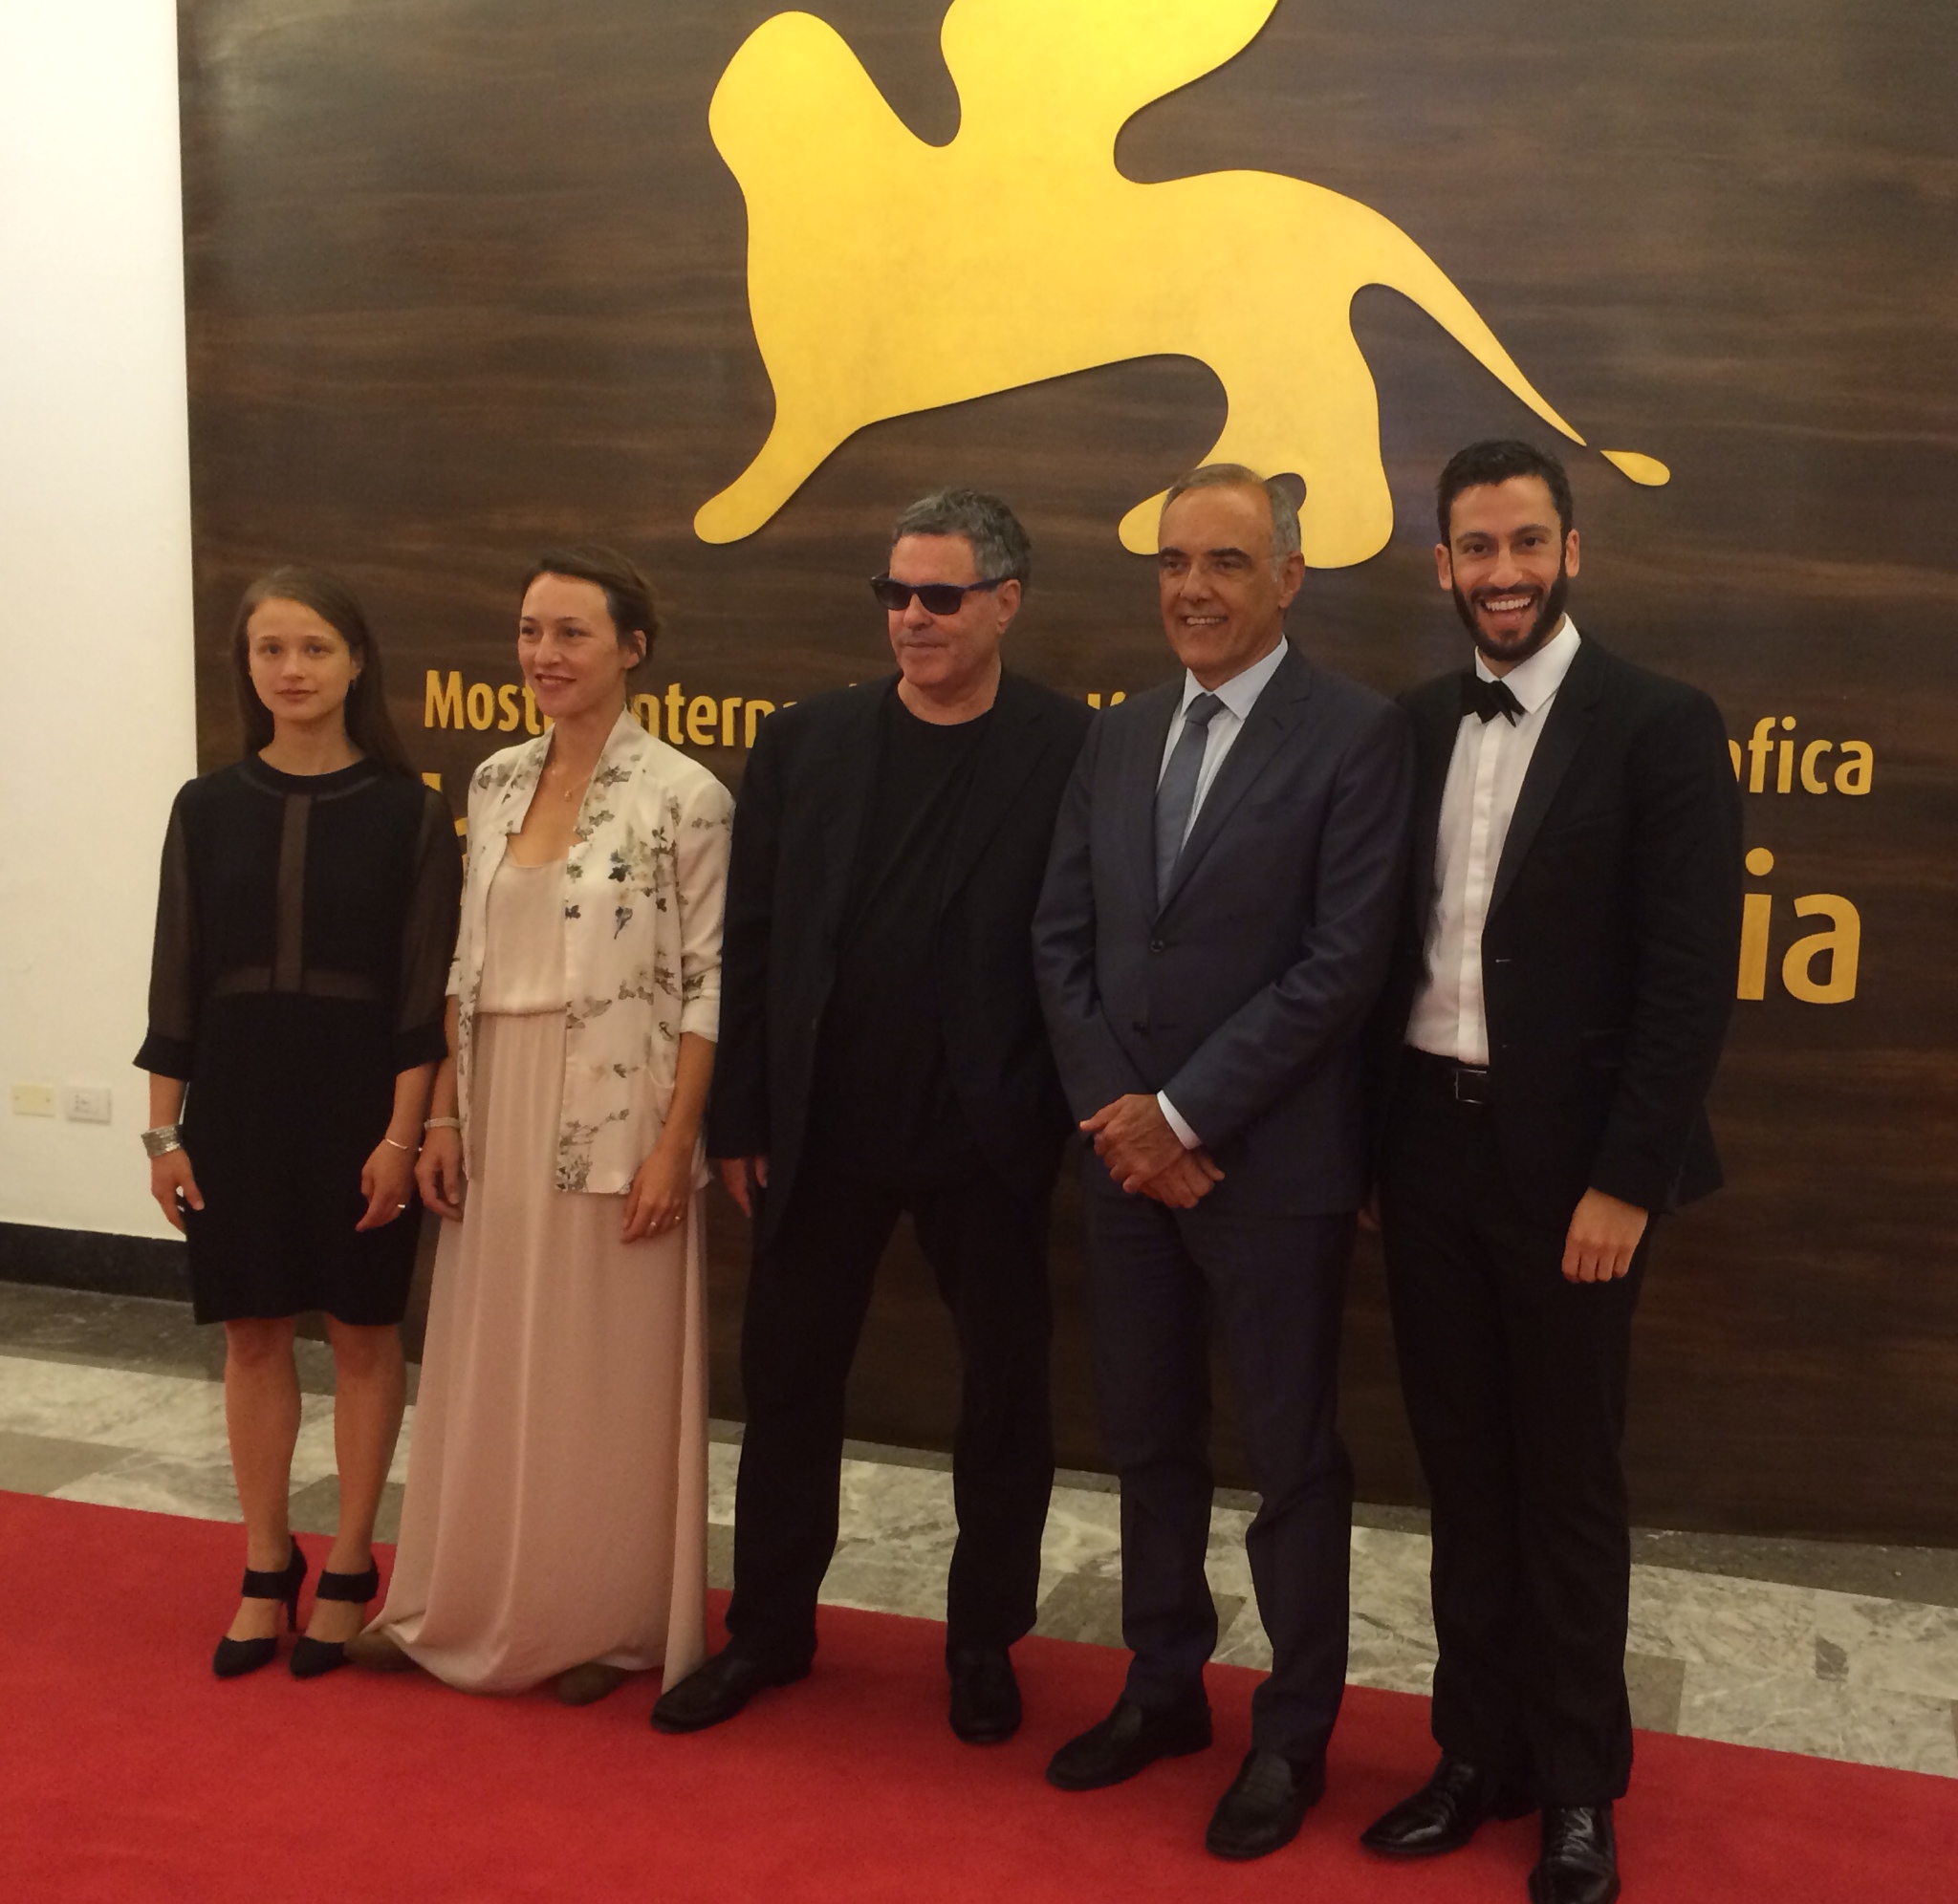 Venice Film Festival Premiere of Tsili